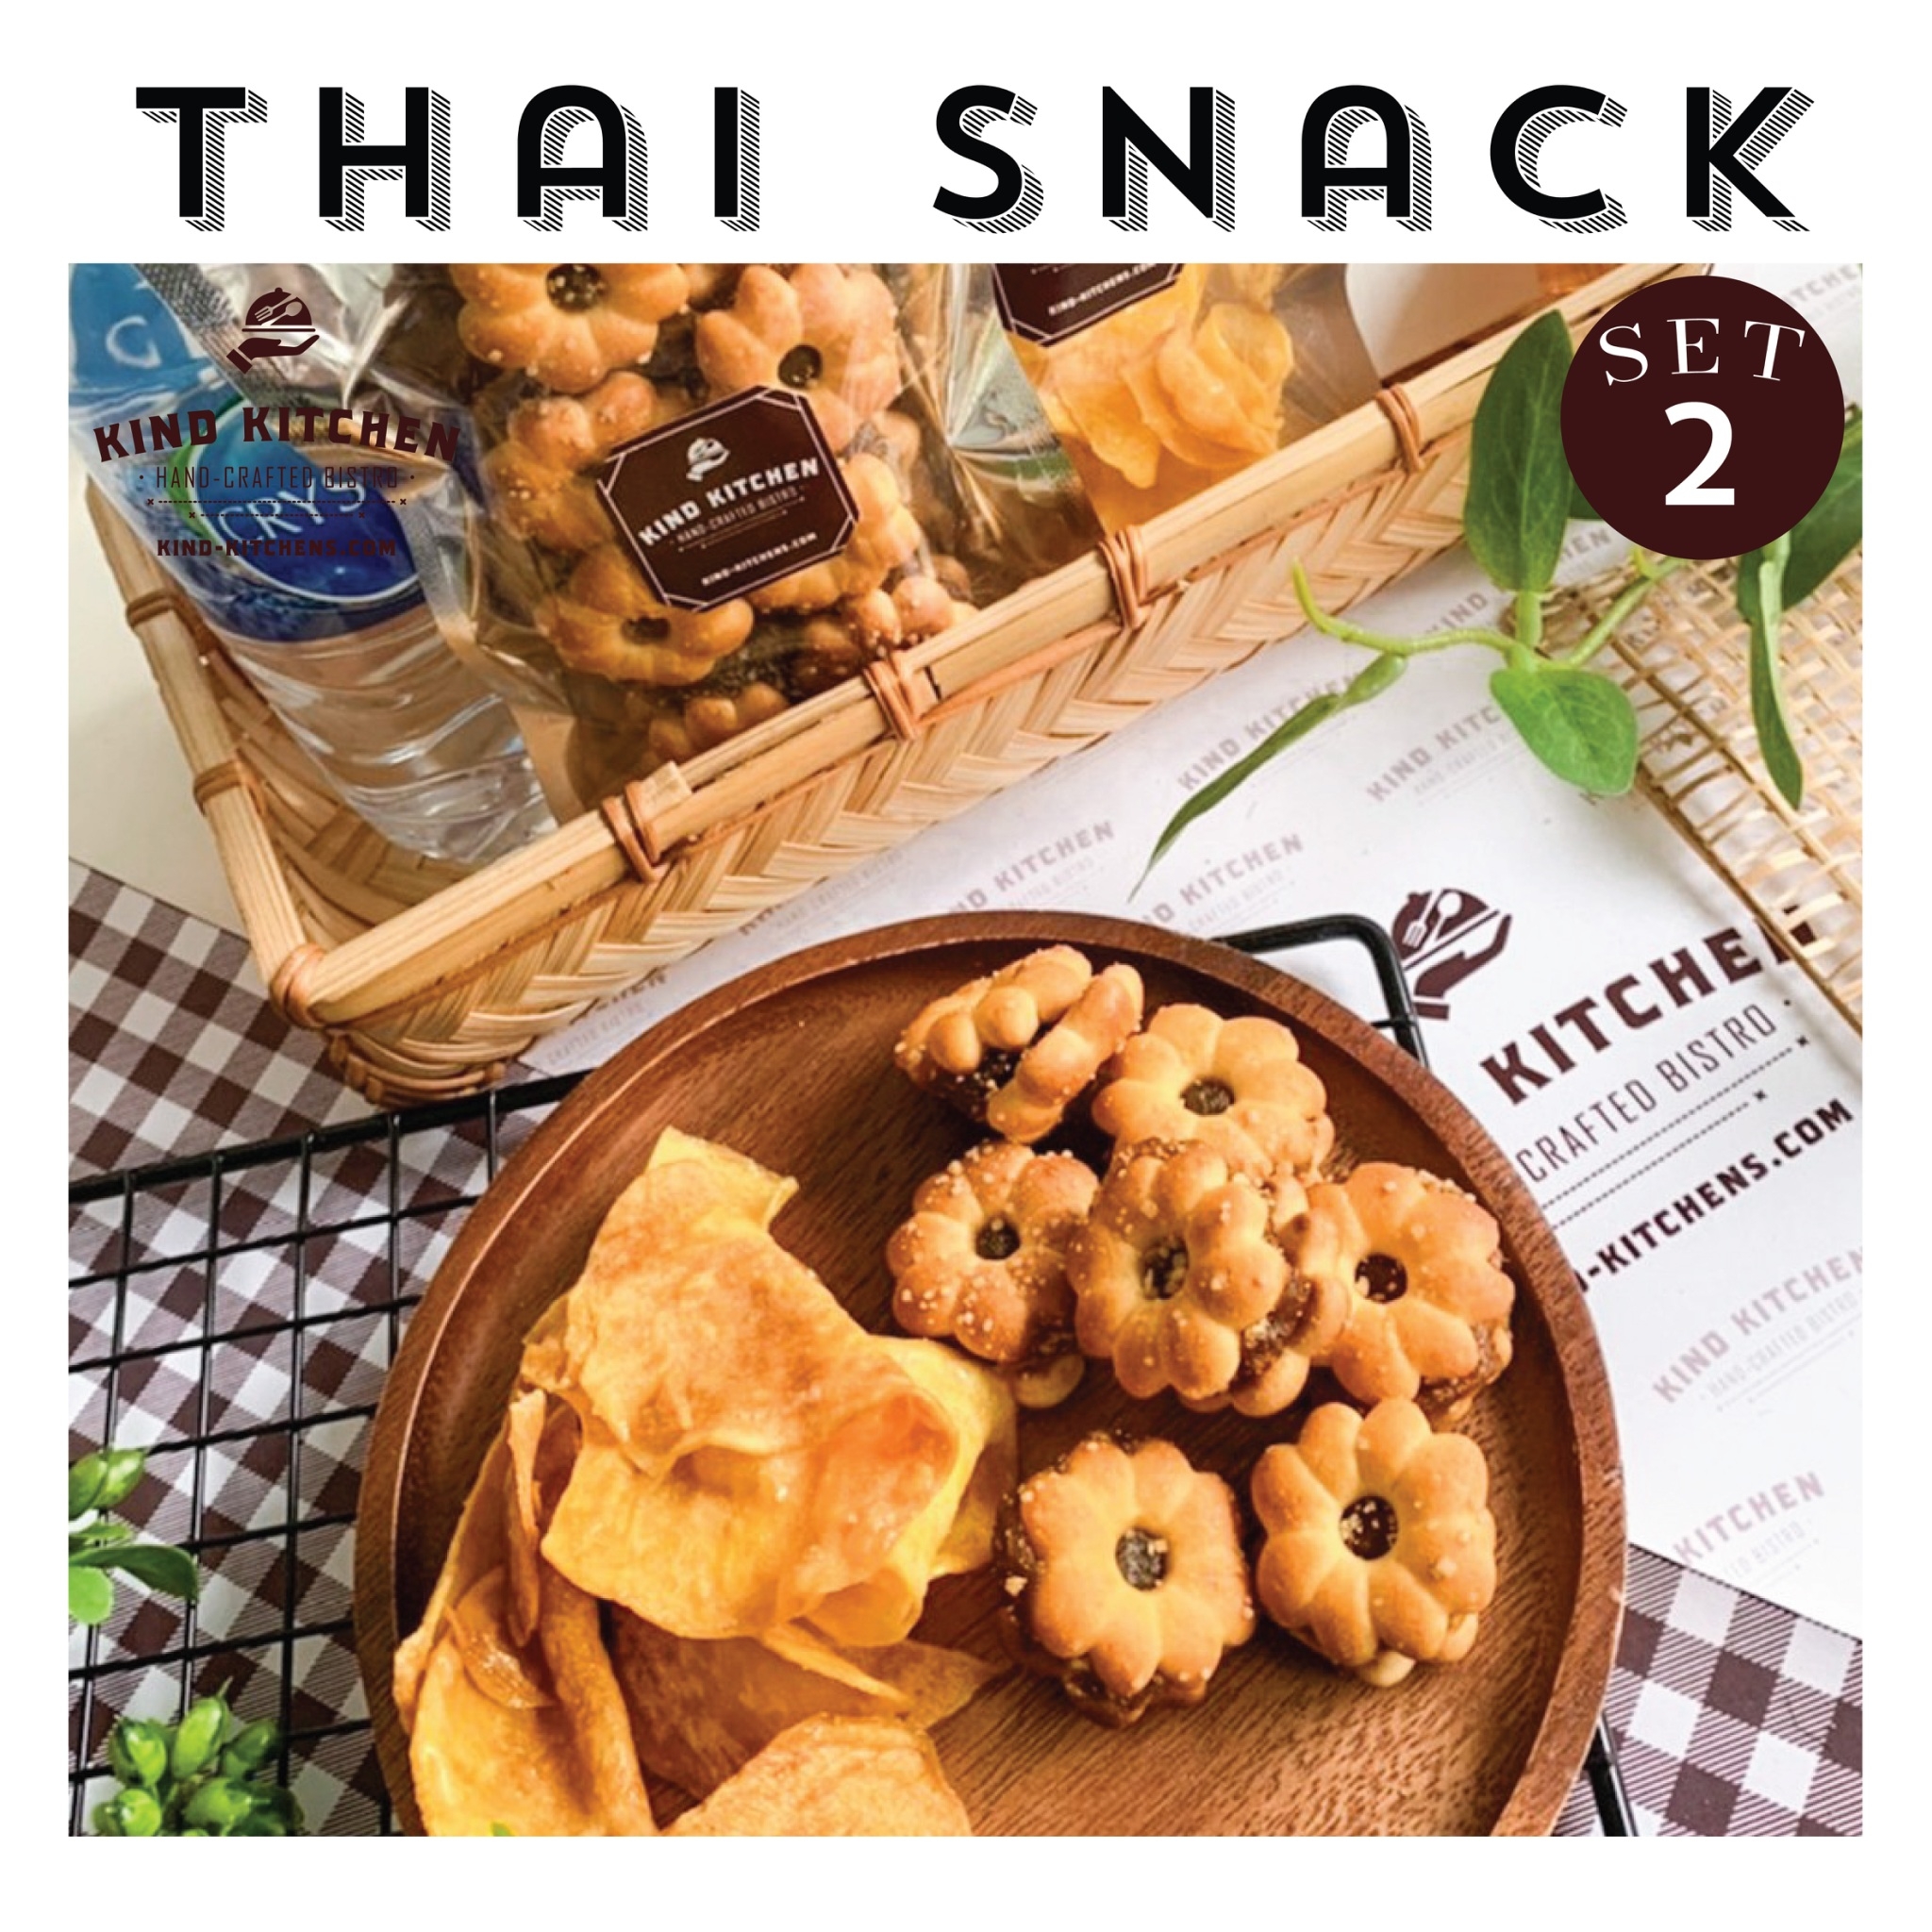 ขนมอบกรอบ Thai Snack 2 ชนิด พร้อมน้ำและถุง   Set 2 (เลือกขนมได้ 2 ชนิด)